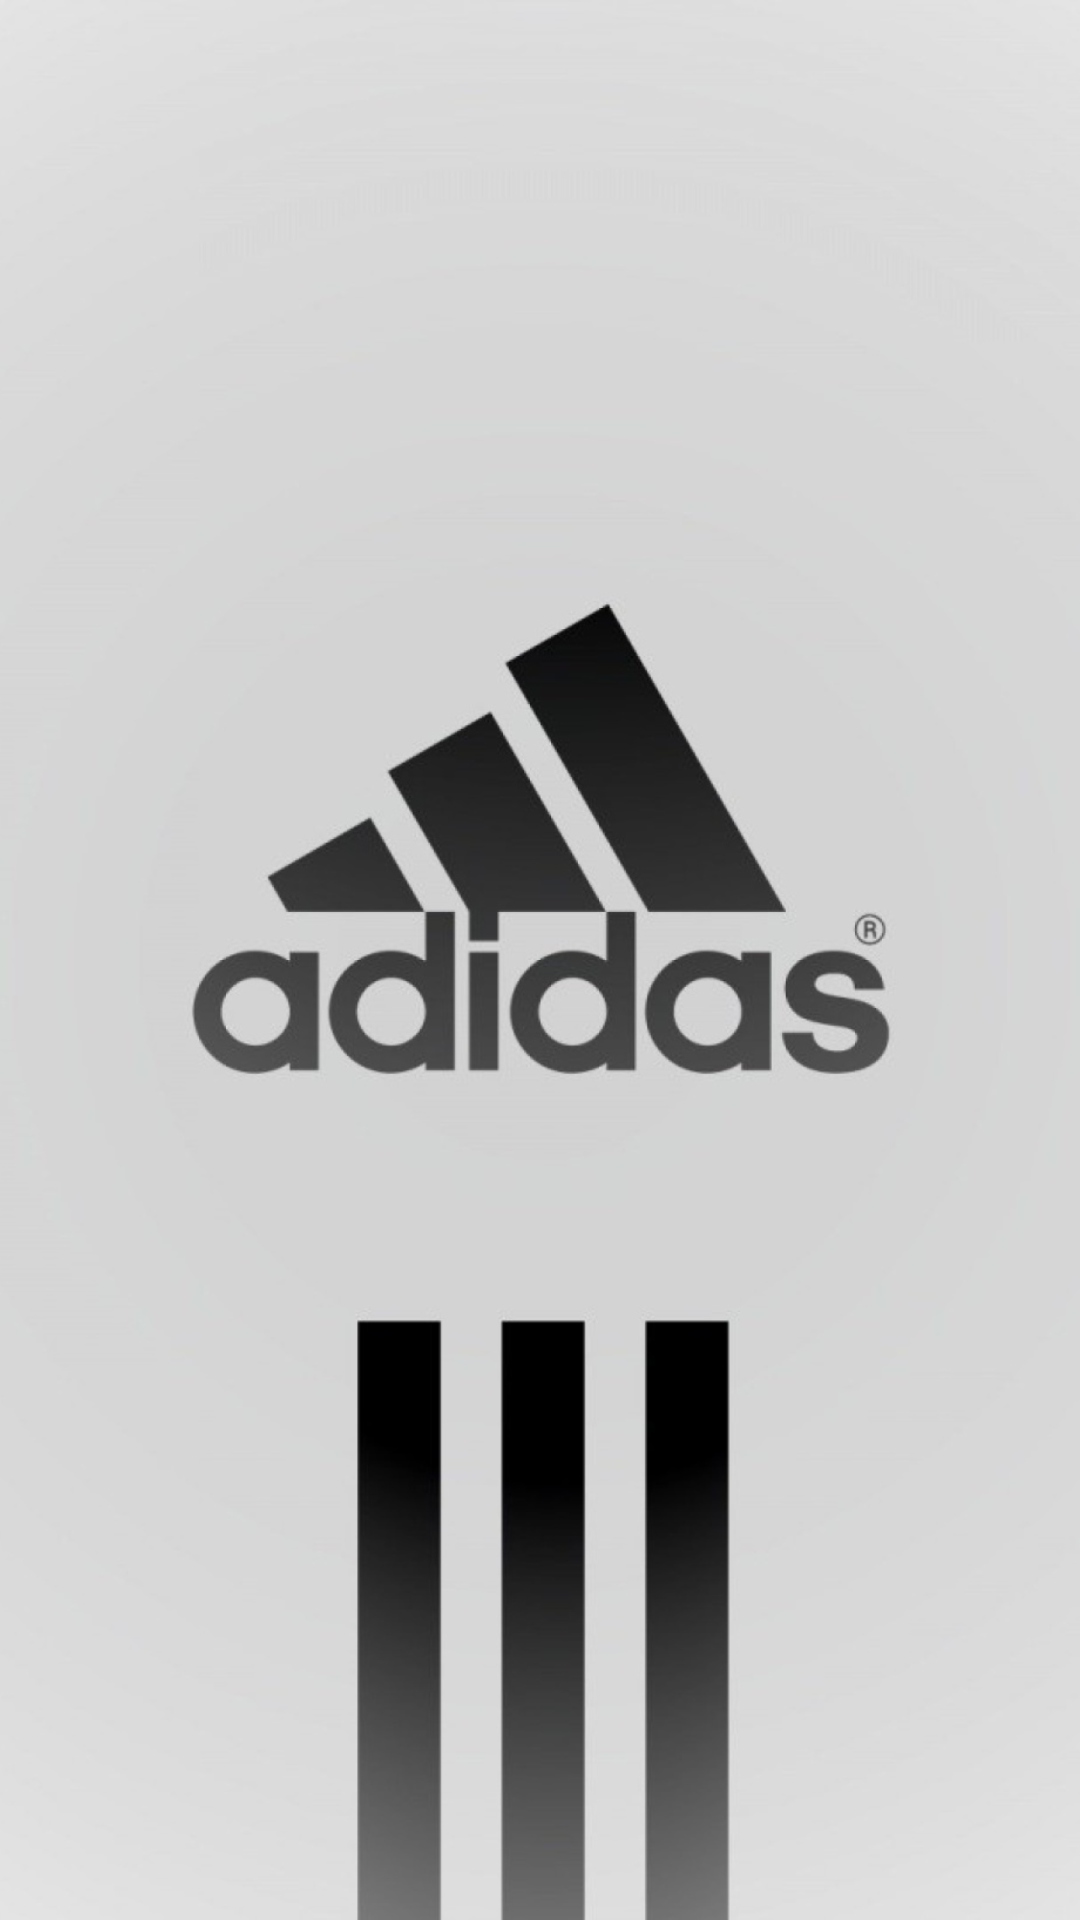 Adidas: Tại sao phải bận tâm về độ bền của giày dép khi bạn có thể yên tâm mua sắm sản phẩm chất lượng cao từ Adidas? Thương hiệu Adidas với sự kết hợp giữa thiết kế đơn giản và công nghệ vượt trội sẽ đưa bạn đến đích một cách dễ dàng và tiện lợi. Hãy cùng tham gia vào cuộc thử thách của mình với các sản phẩm Adidas và cảm nhận sự khác biệt.